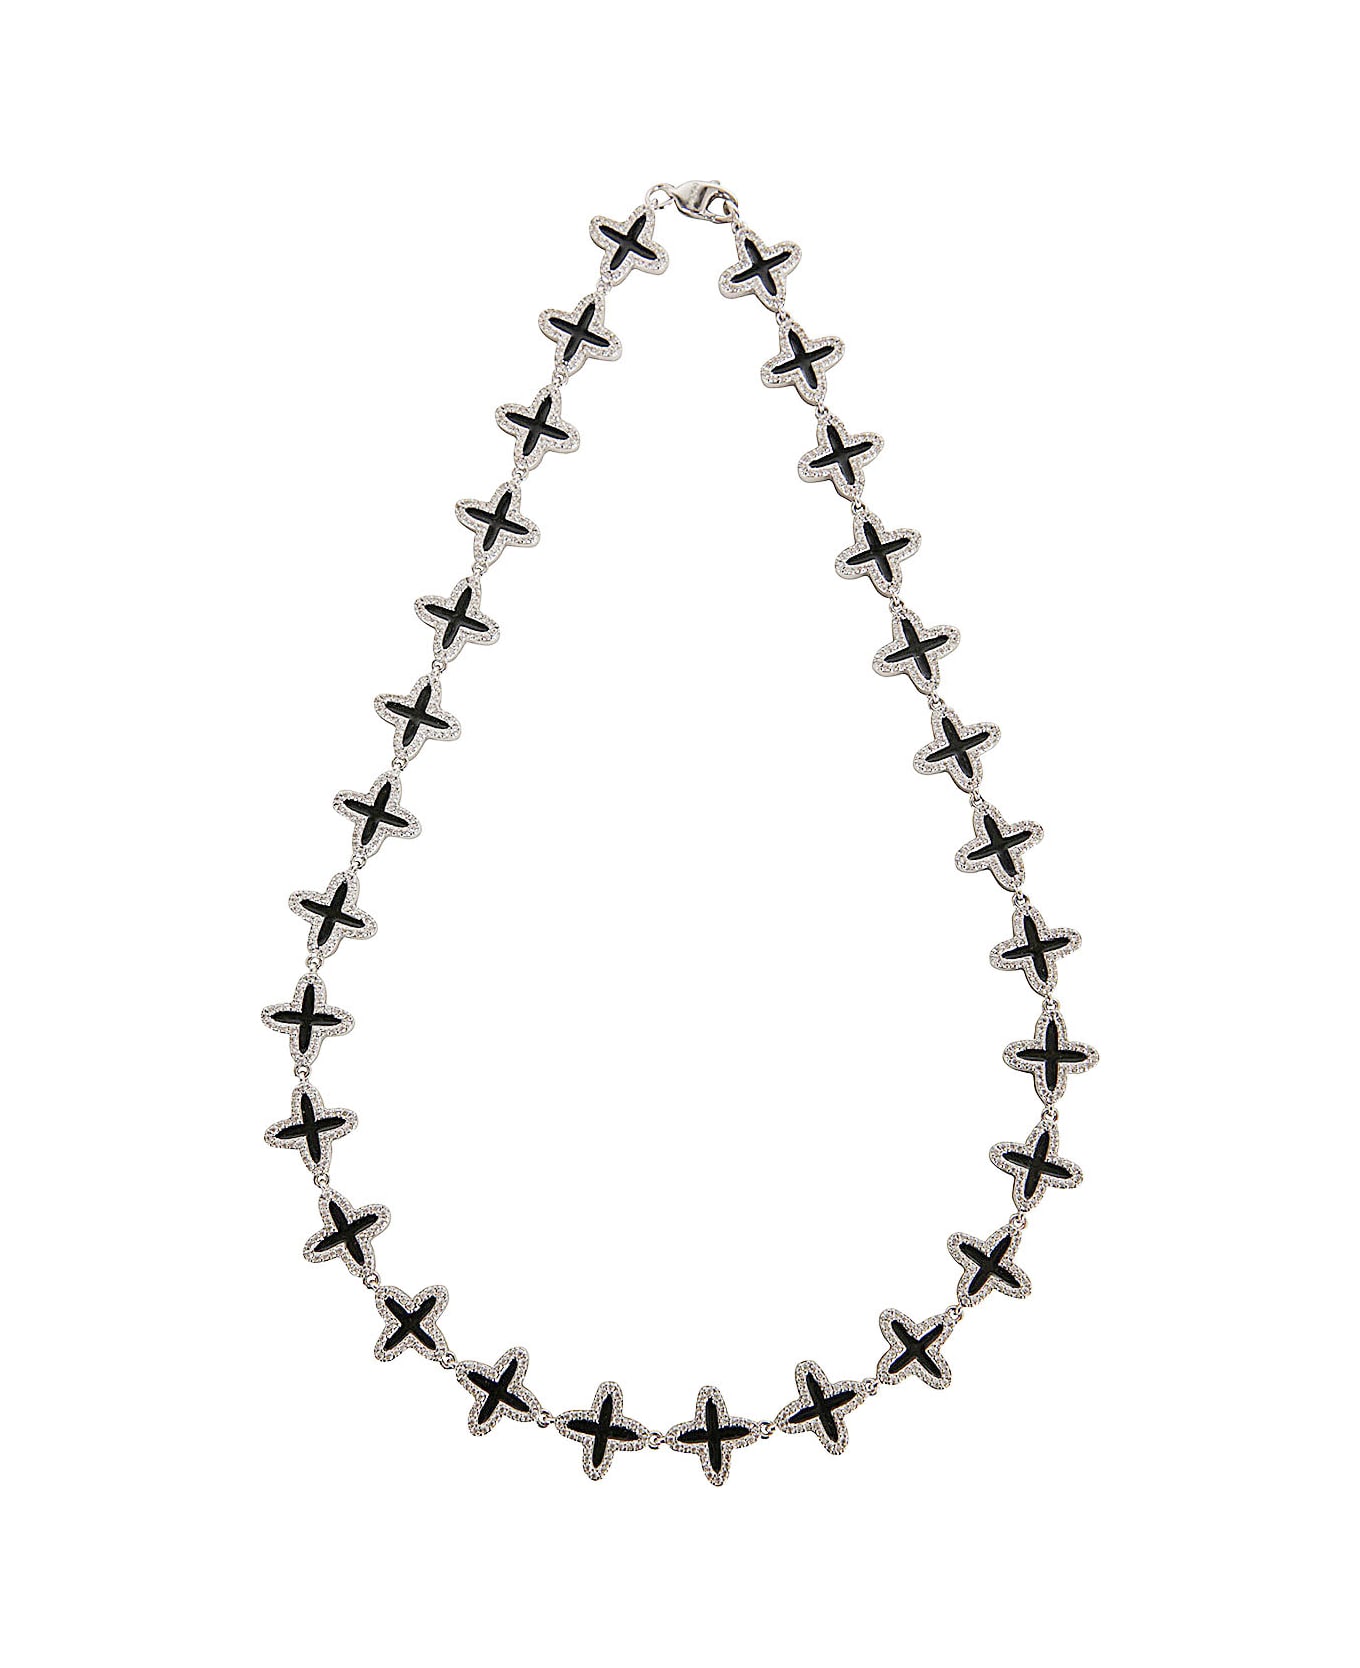 Darkai Clover Tennis Necklace - White Black